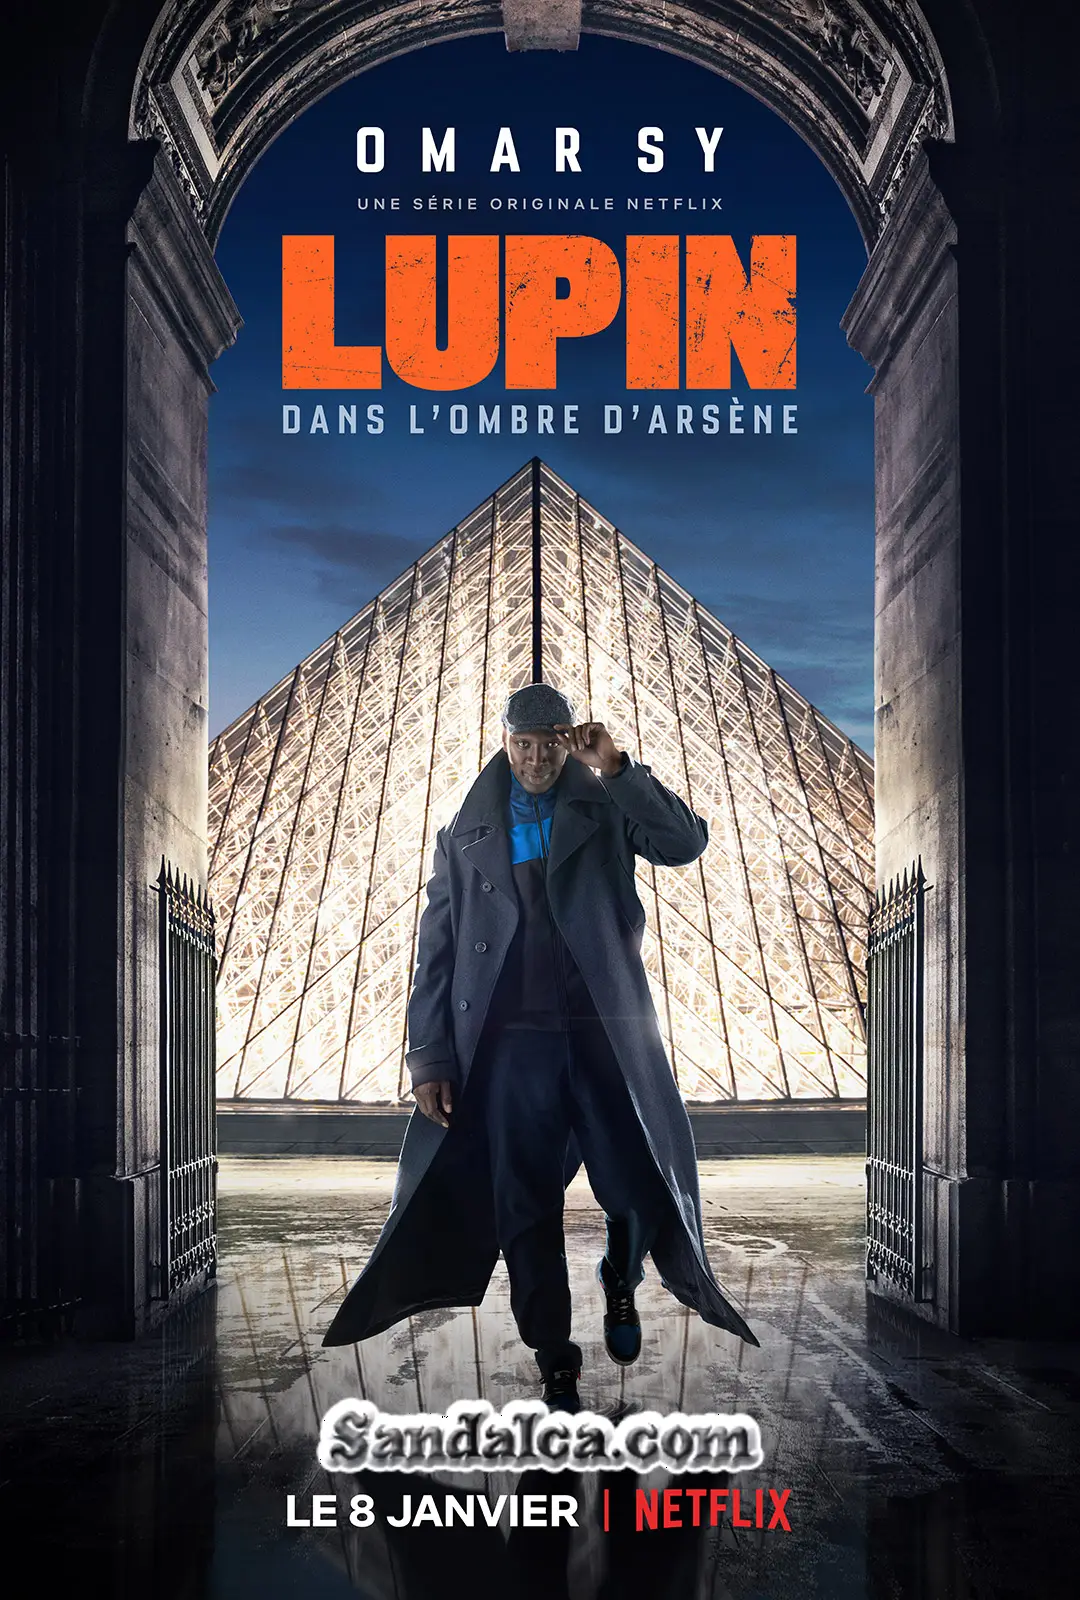 Lupin 2. Sezon Tüm Bölümleri Türkçe Dublaj indir | 1080p DUAL